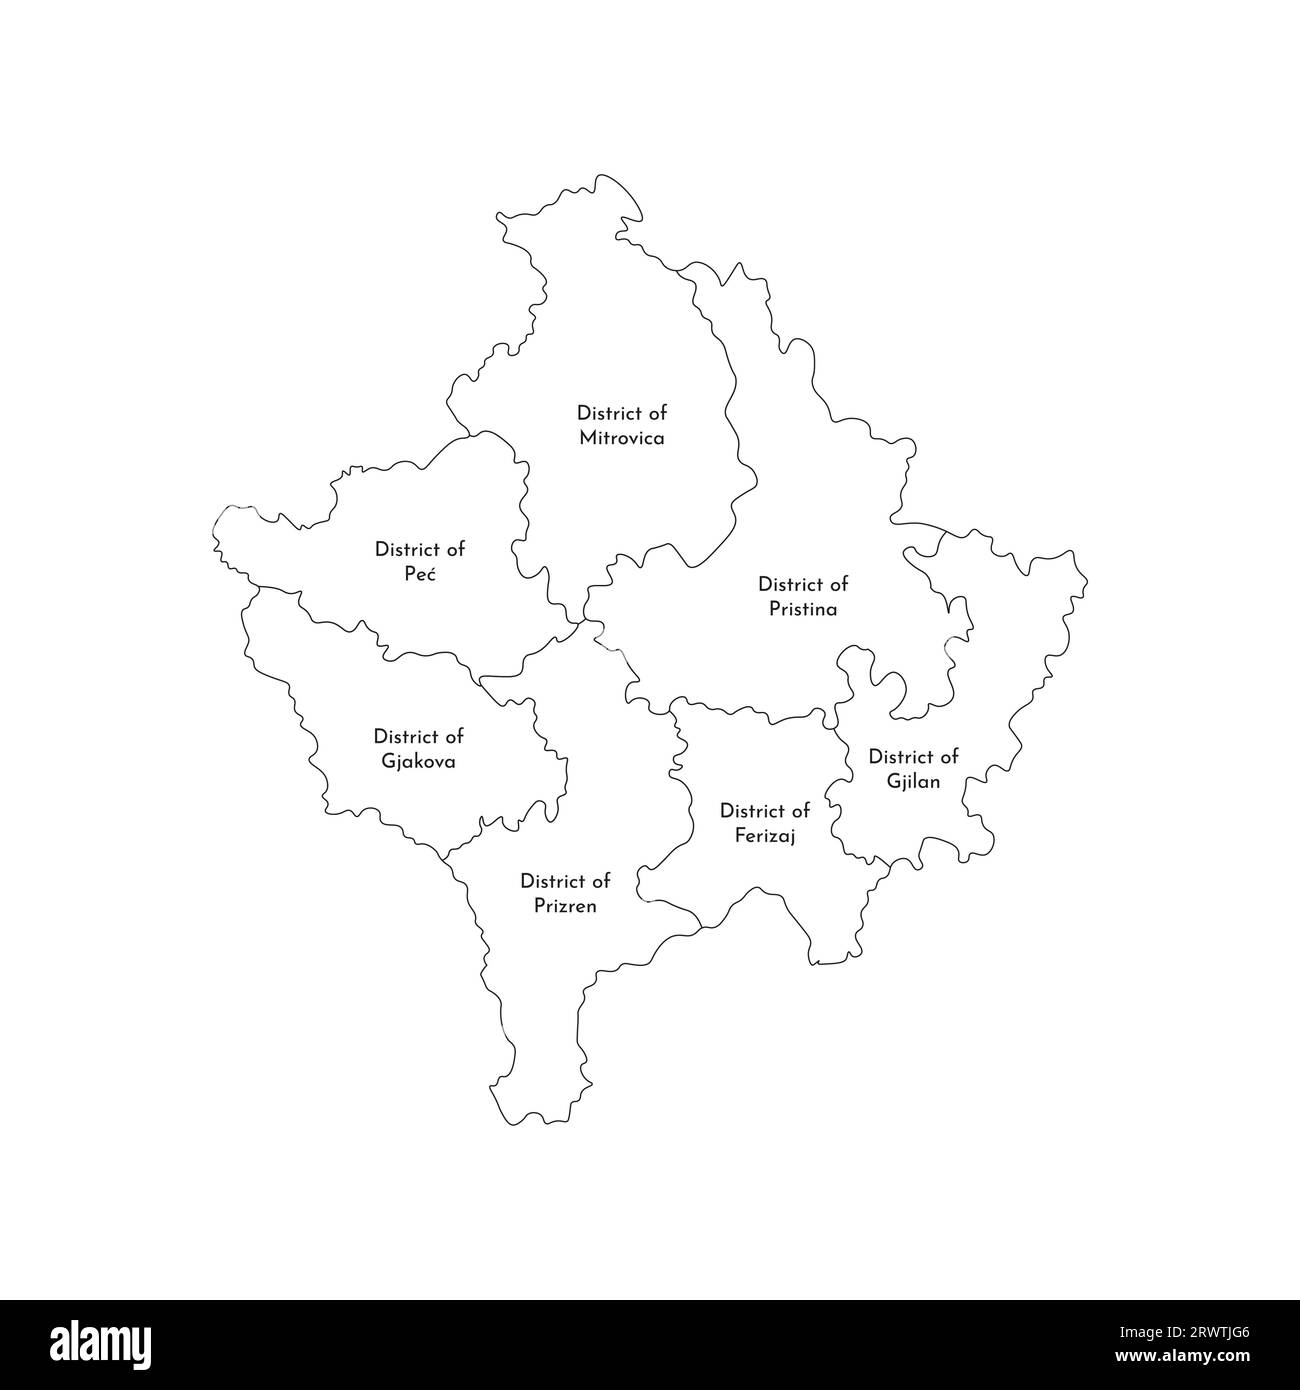 Illustrazione vettoriale isolata della mappa amministrativa semplificata del Kosovo. Confini e nomi dei distretti. Silhouette nere. Illustrazione Vettoriale